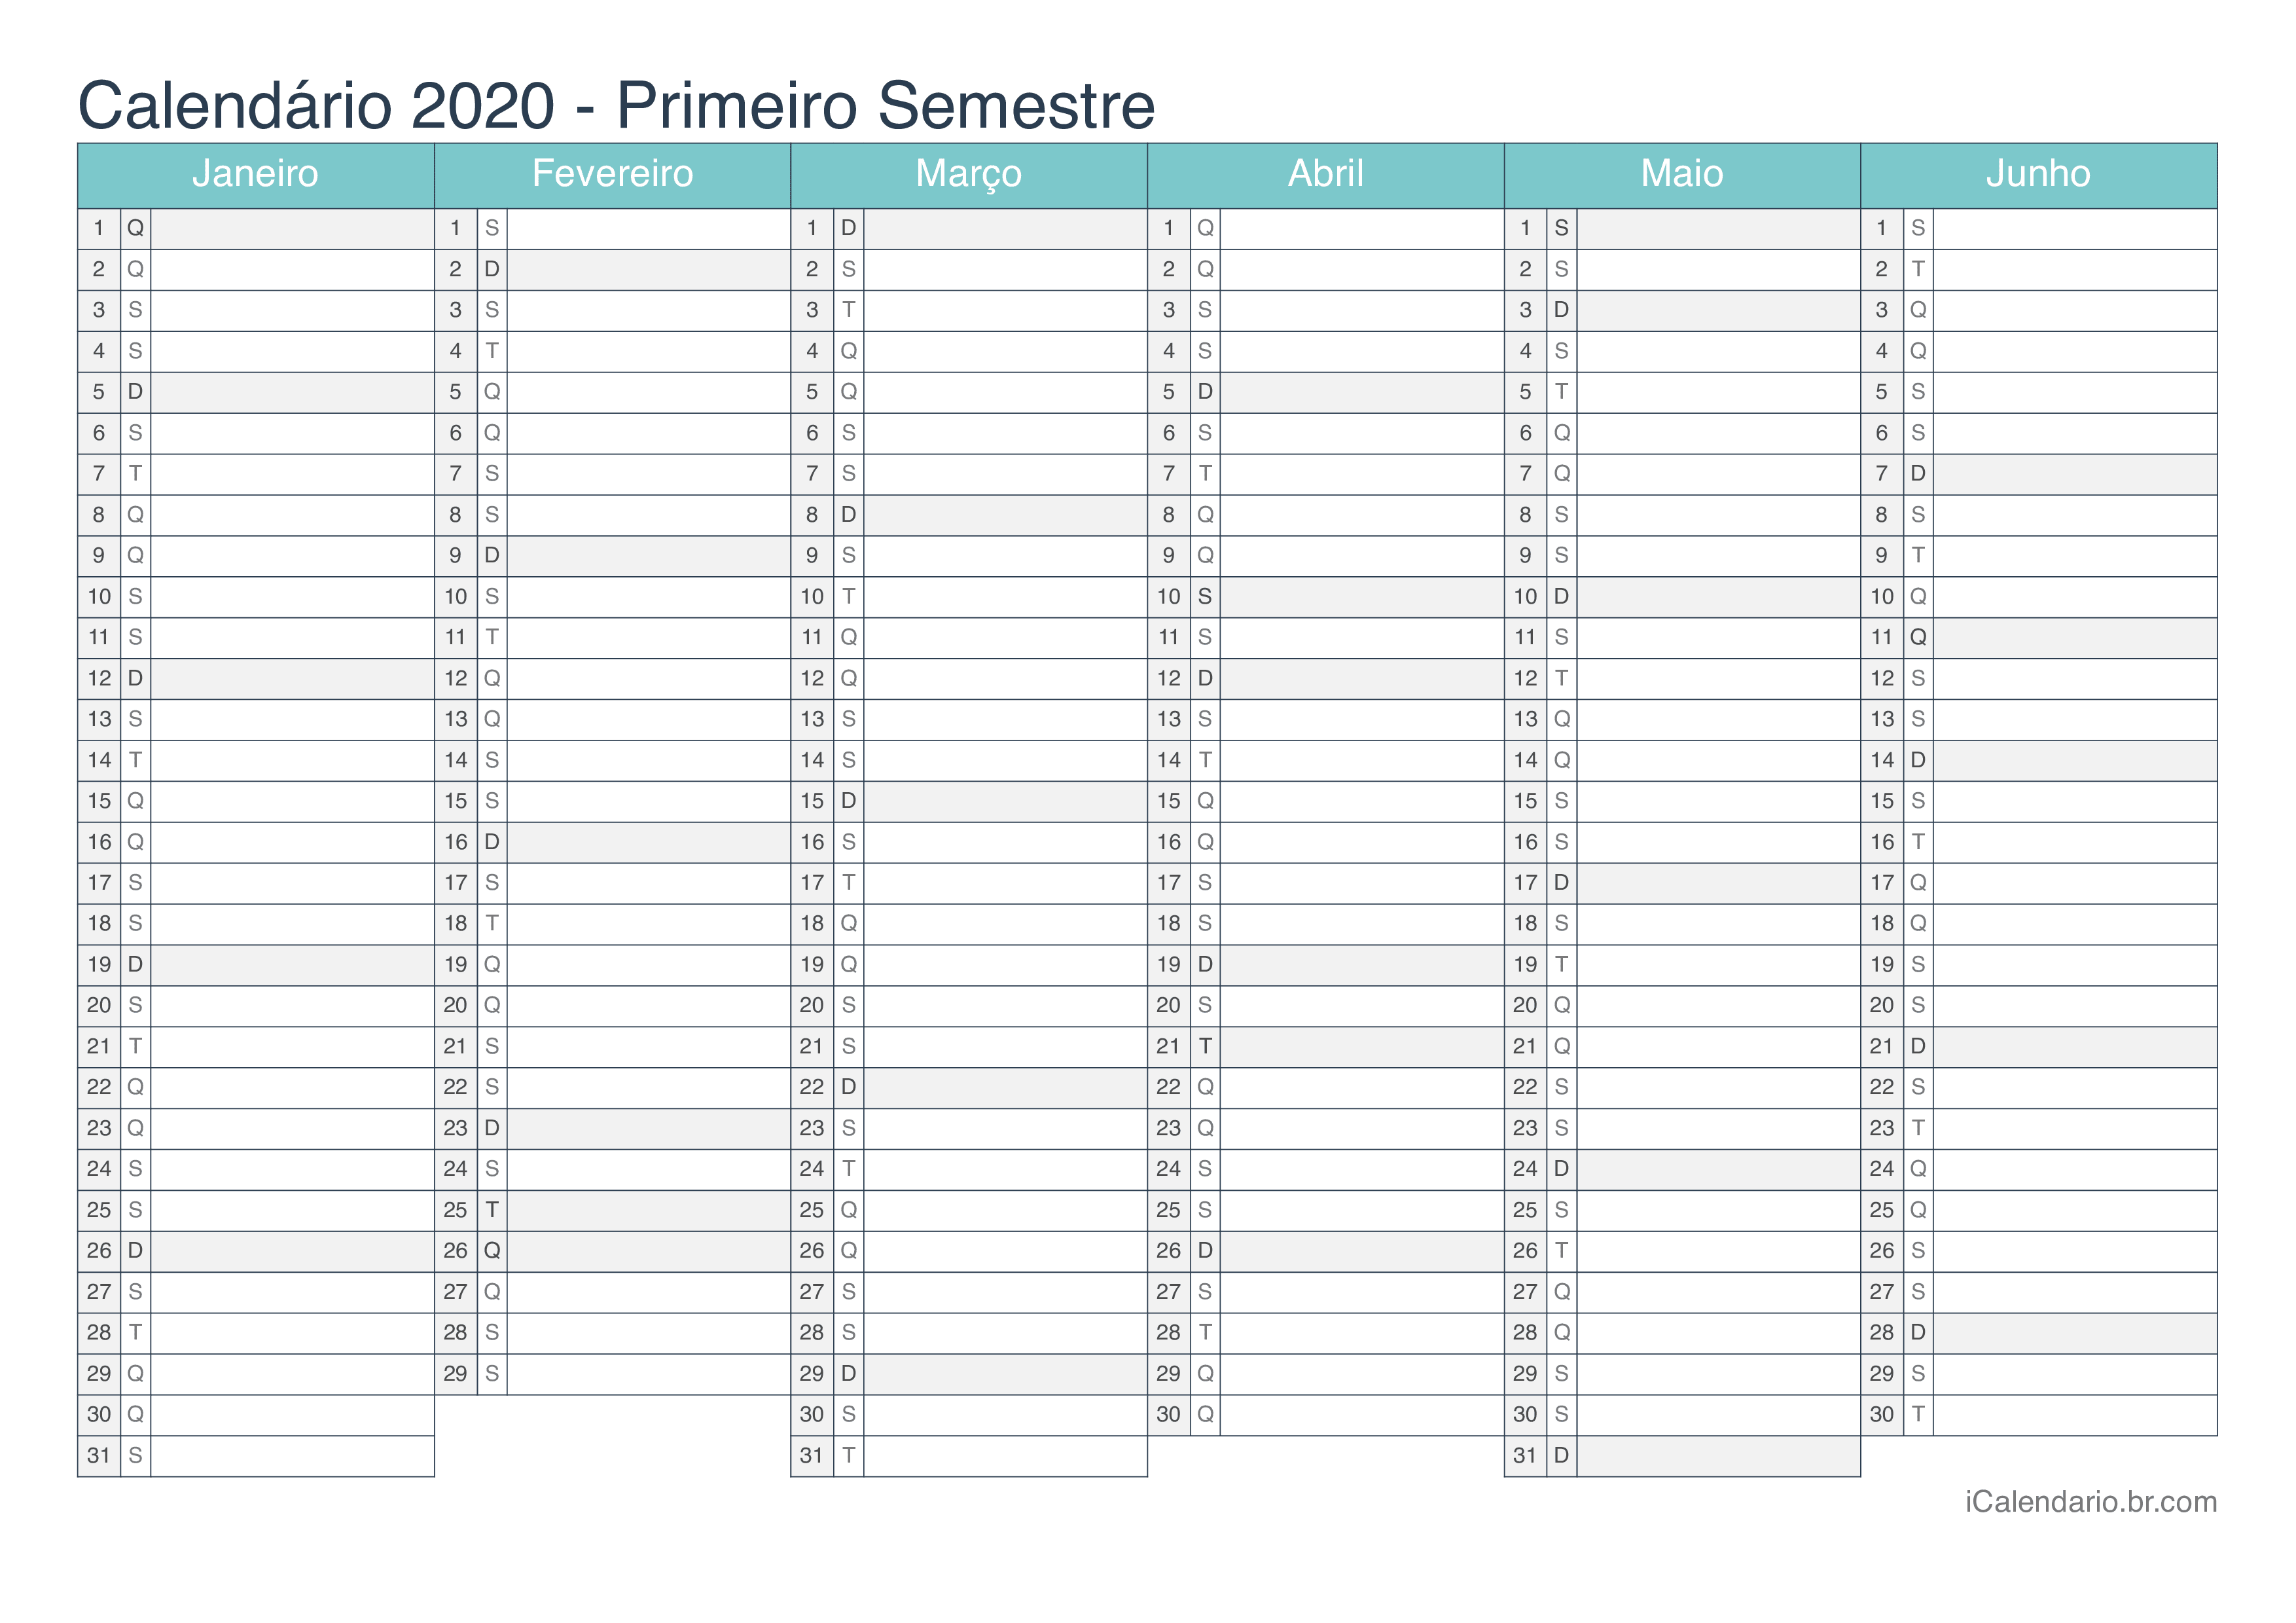 Calendário por semestre 2020 - Turquesa